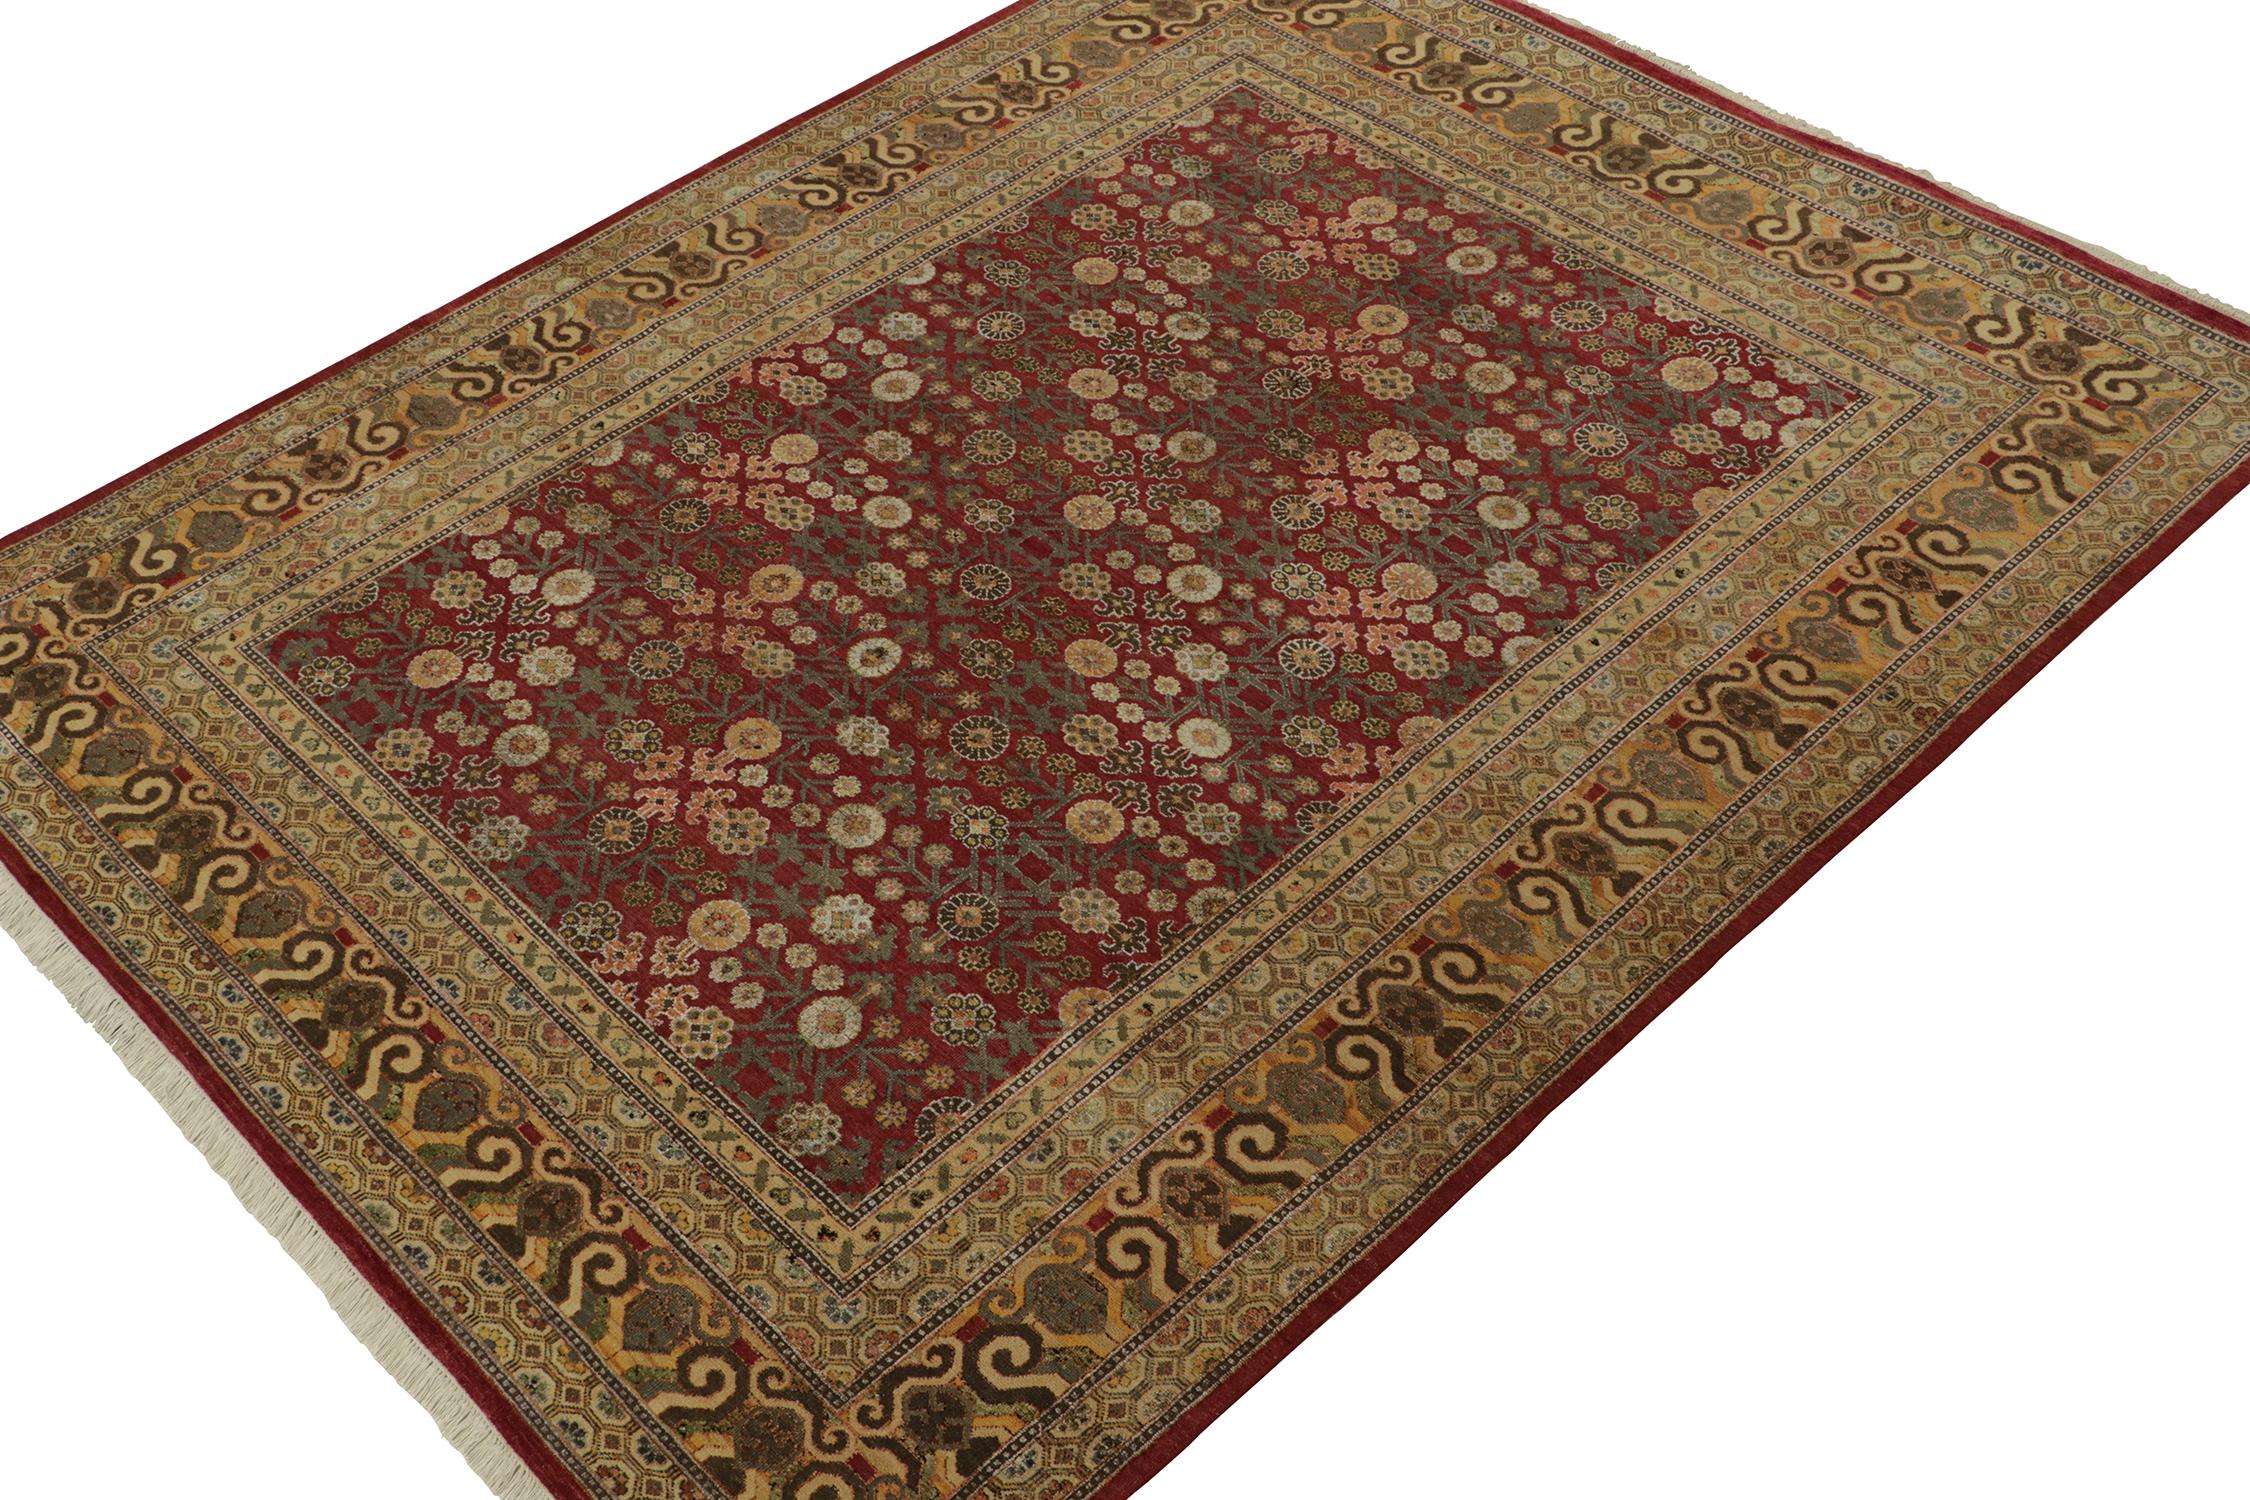 Ein 8x10 großer Teppich aus der Modern Classics Collection'S von Rug & Kilim, inspiriert von antiken Khotan-Teppichen. Handgeknüpft aus Wolle, mit einem für diese inspirierende Provenienz bemerkenswert einzigartigen Farbenspiel.
Weiter zum